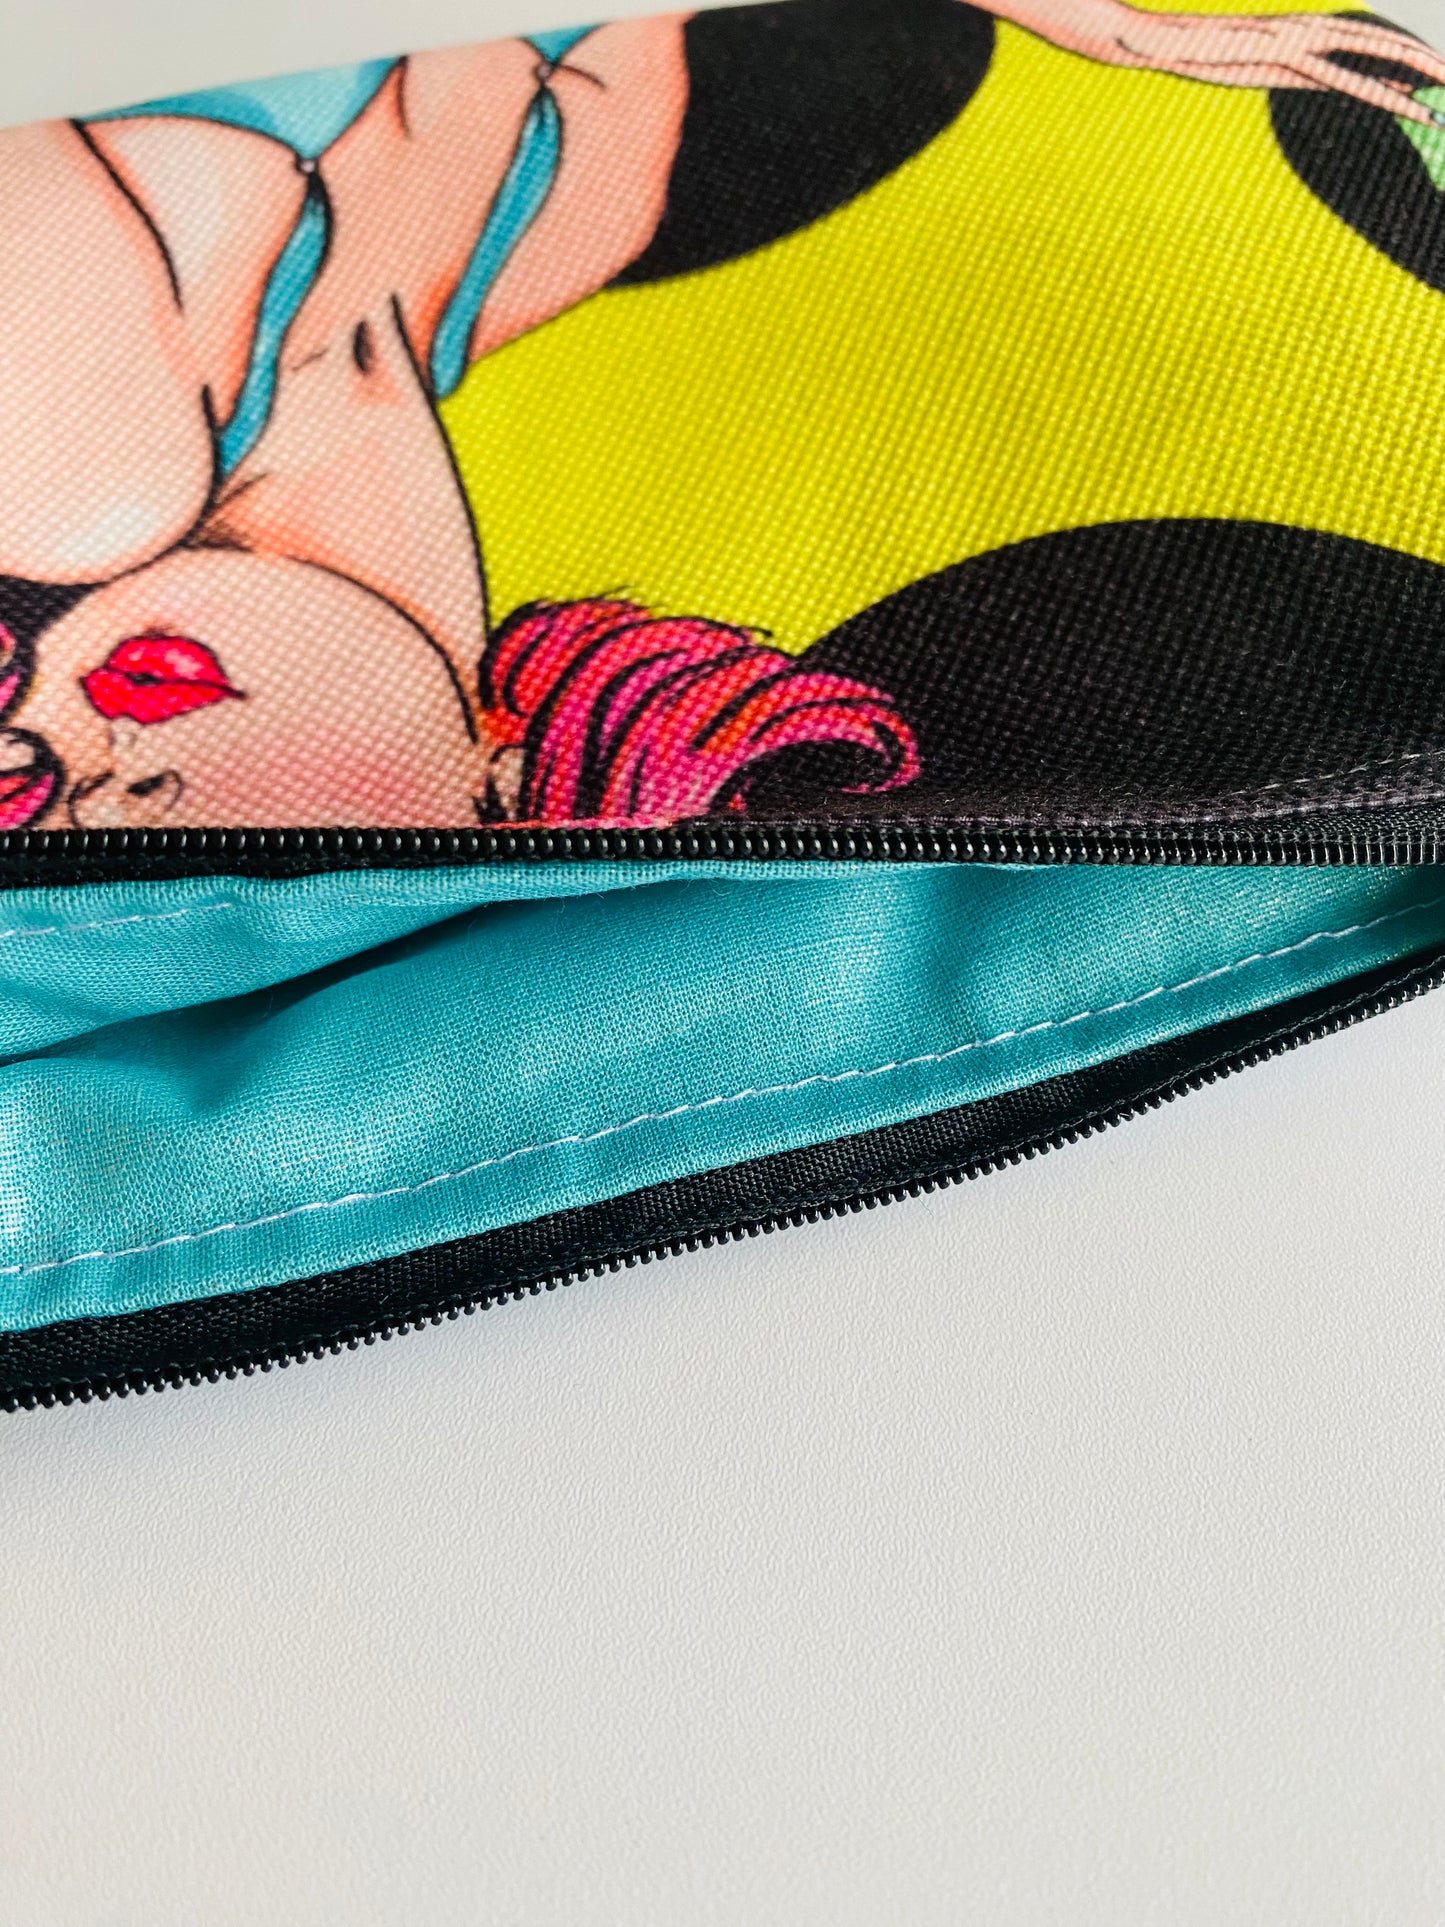 Pop Art "Have a Cupcake” Zippered Pouch Bag